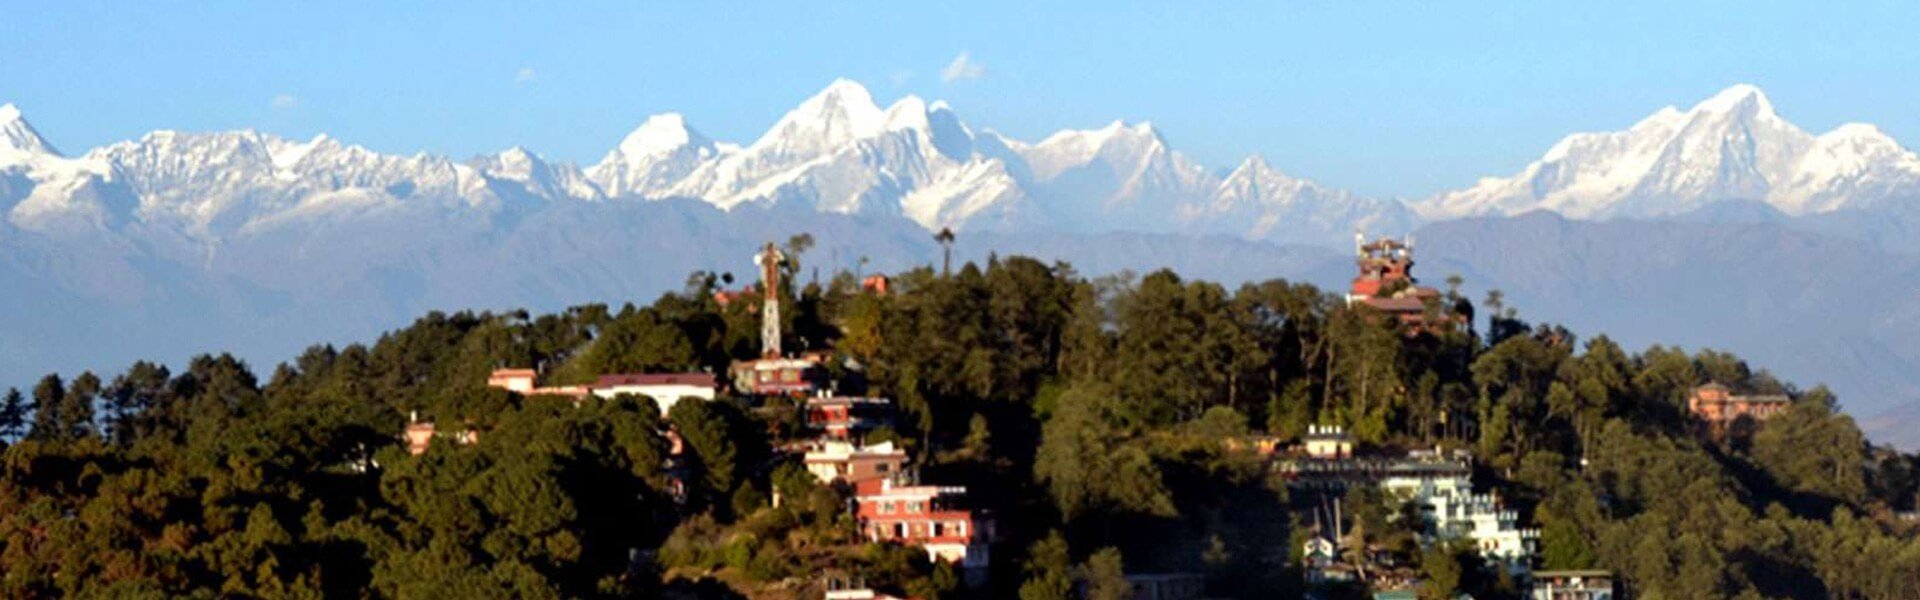 Trekking in Nepal in June July